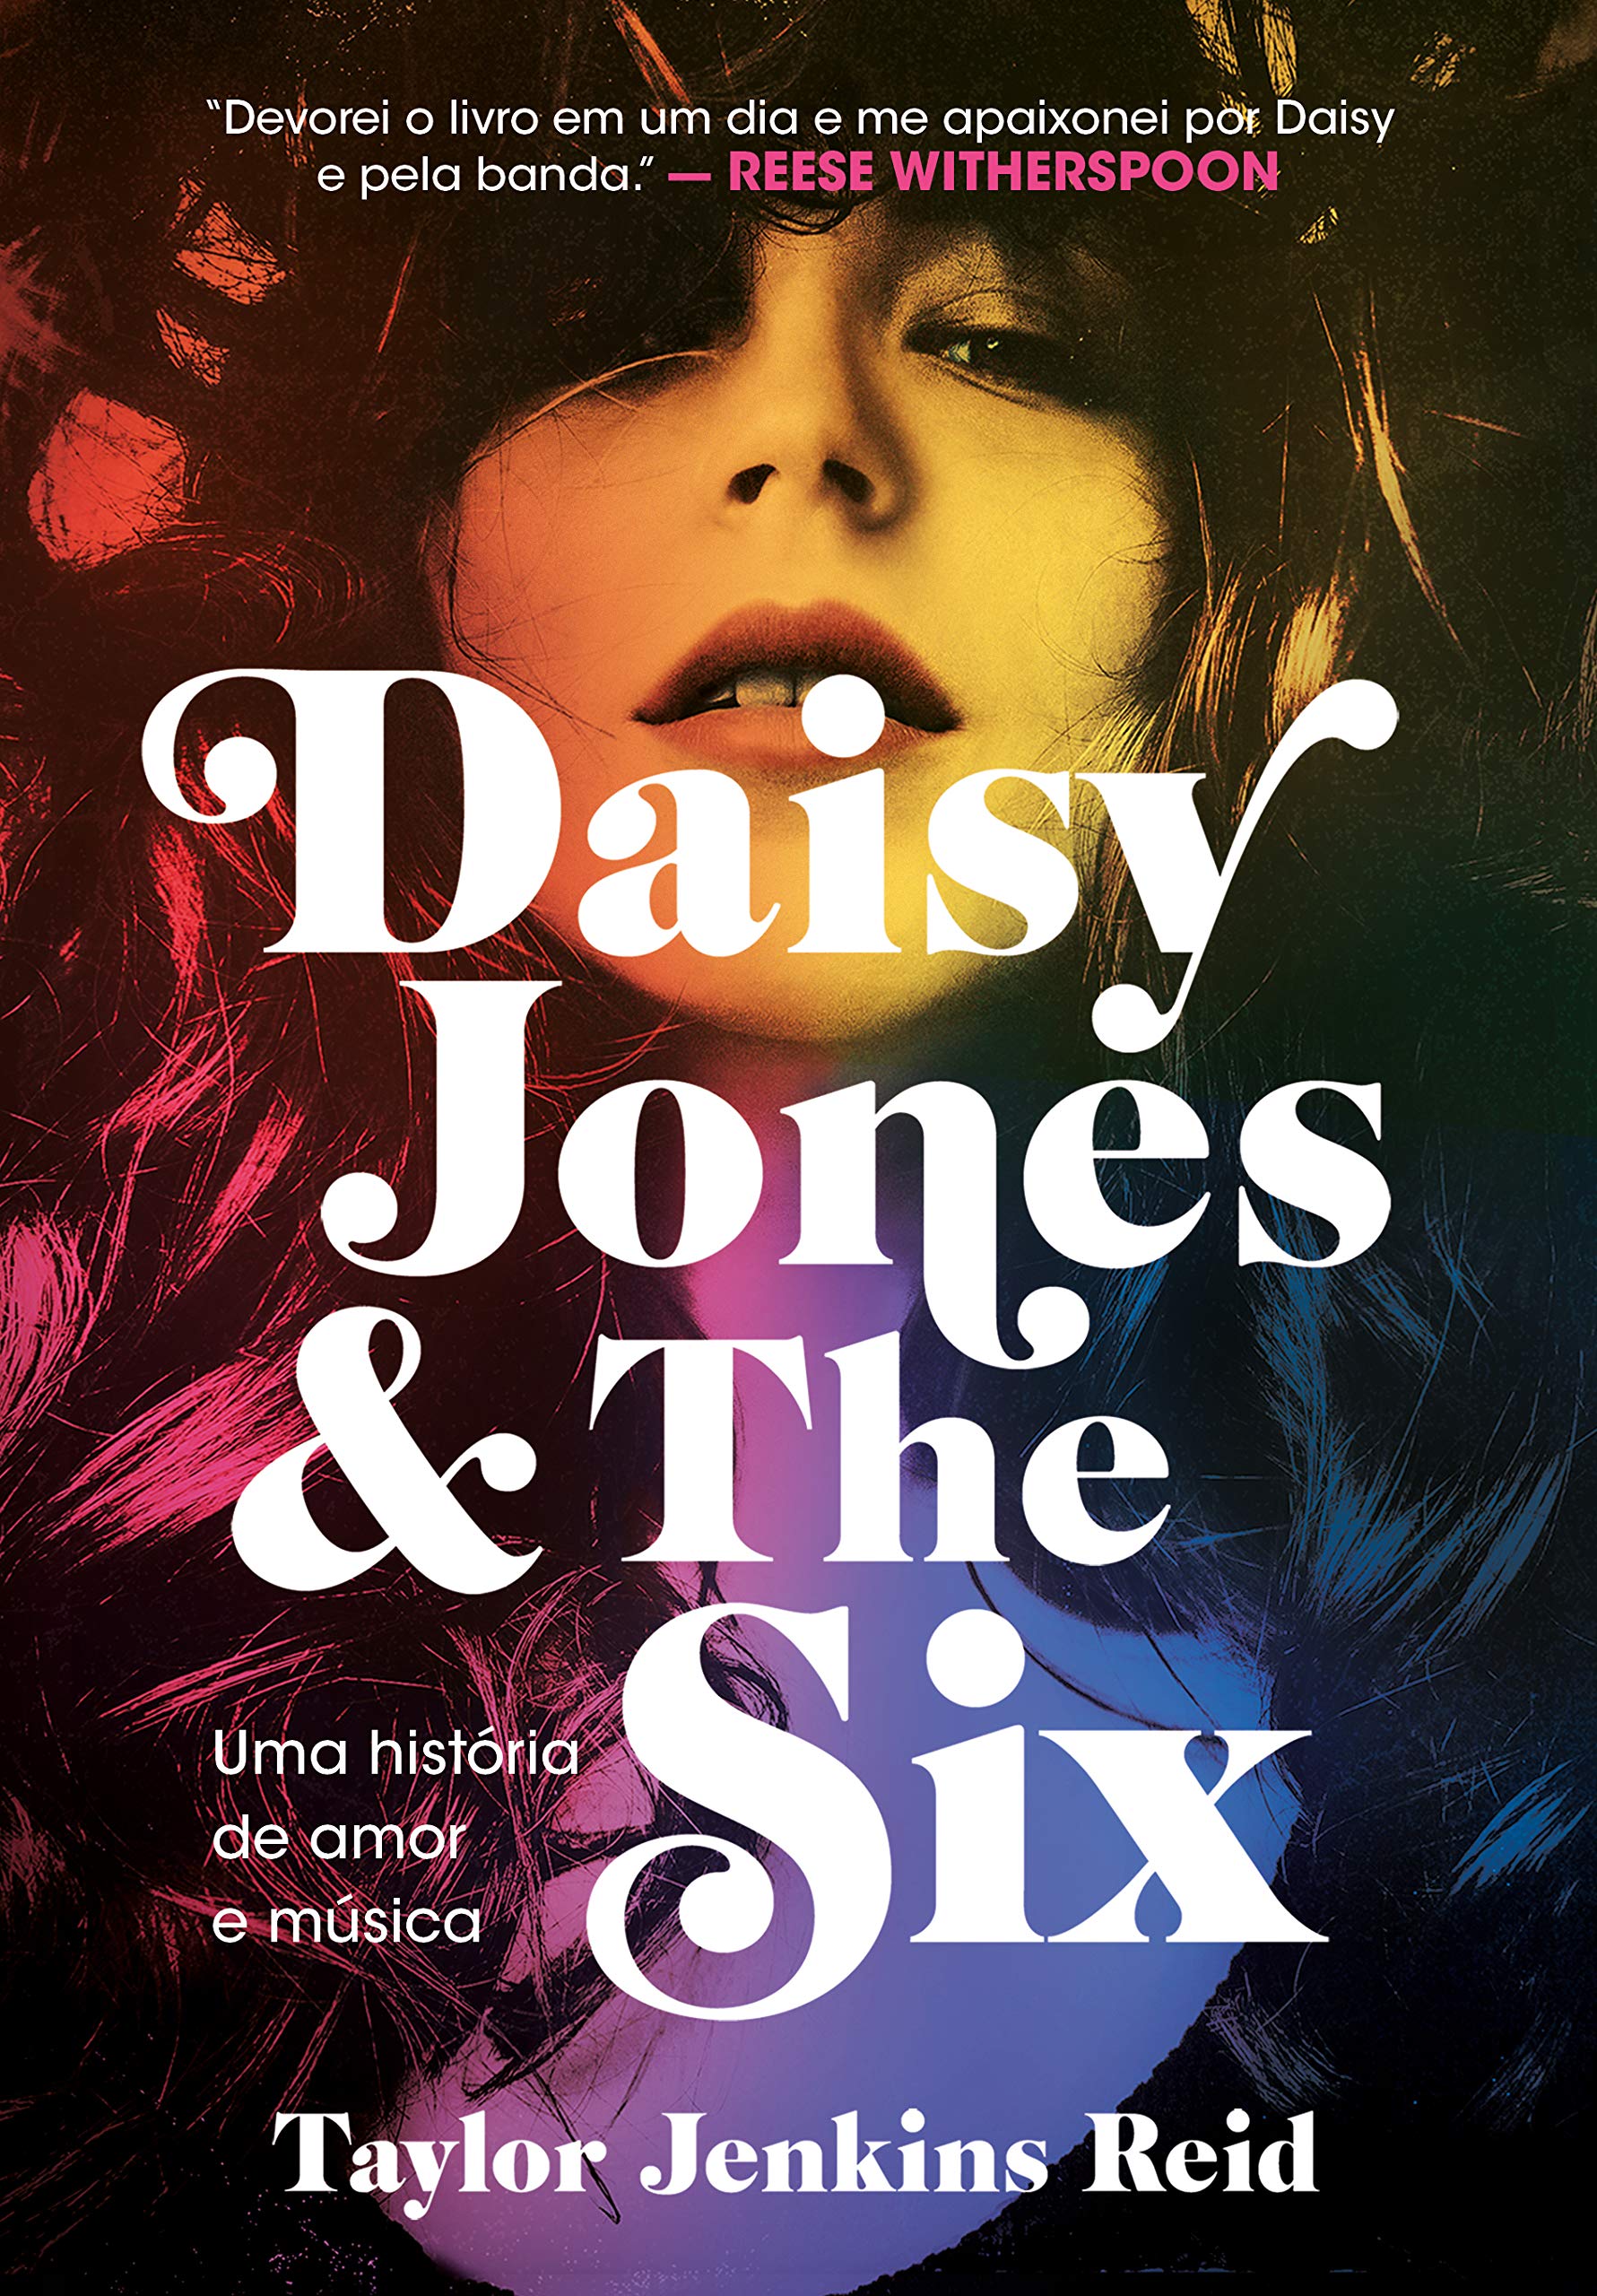 Série "Daisy Jones & The Six" corta personagem do livro